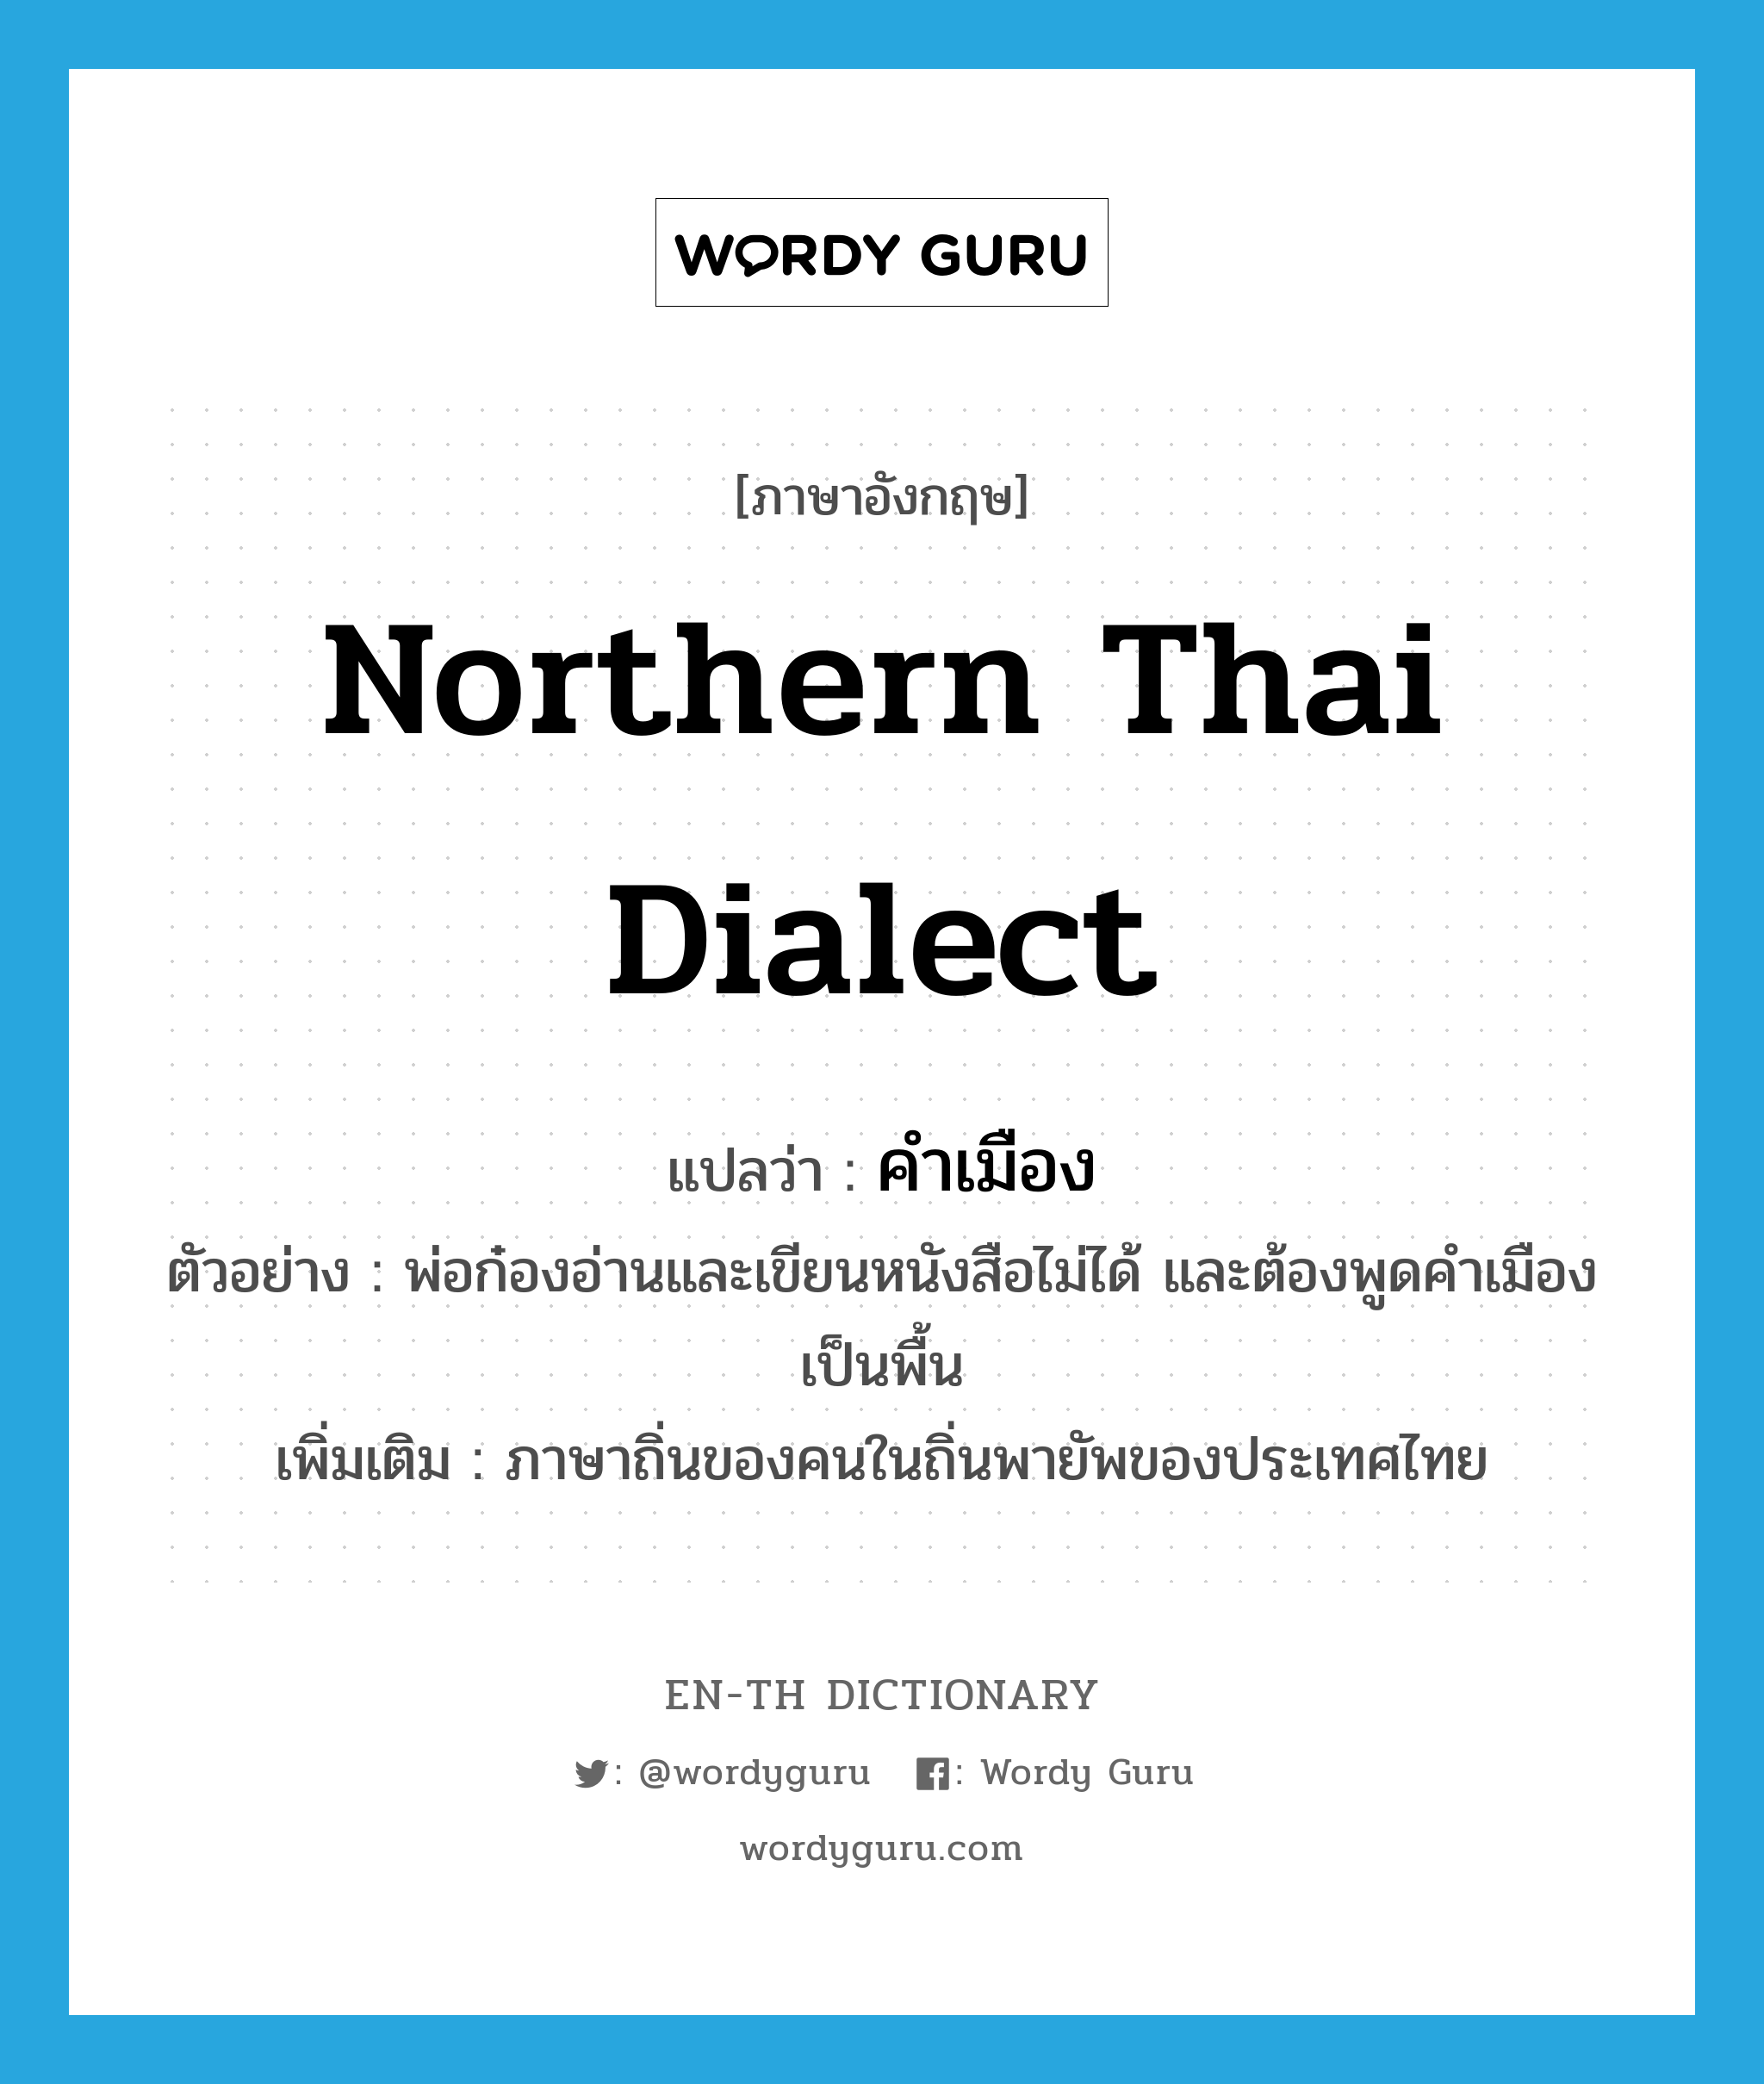 คำเมือง ภาษาอังกฤษ?, คำศัพท์ภาษาอังกฤษ คำเมือง แปลว่า Northern Thai dialect ประเภท N ตัวอย่าง พ่อก๋องอ่านและเขียนหนังสือไม่ได้ และต้องพูดคำเมืองเป็นพื้น เพิ่มเติม ภาษาถิ่นของคนในถิ่นพายัพของประเทศไทย หมวด N